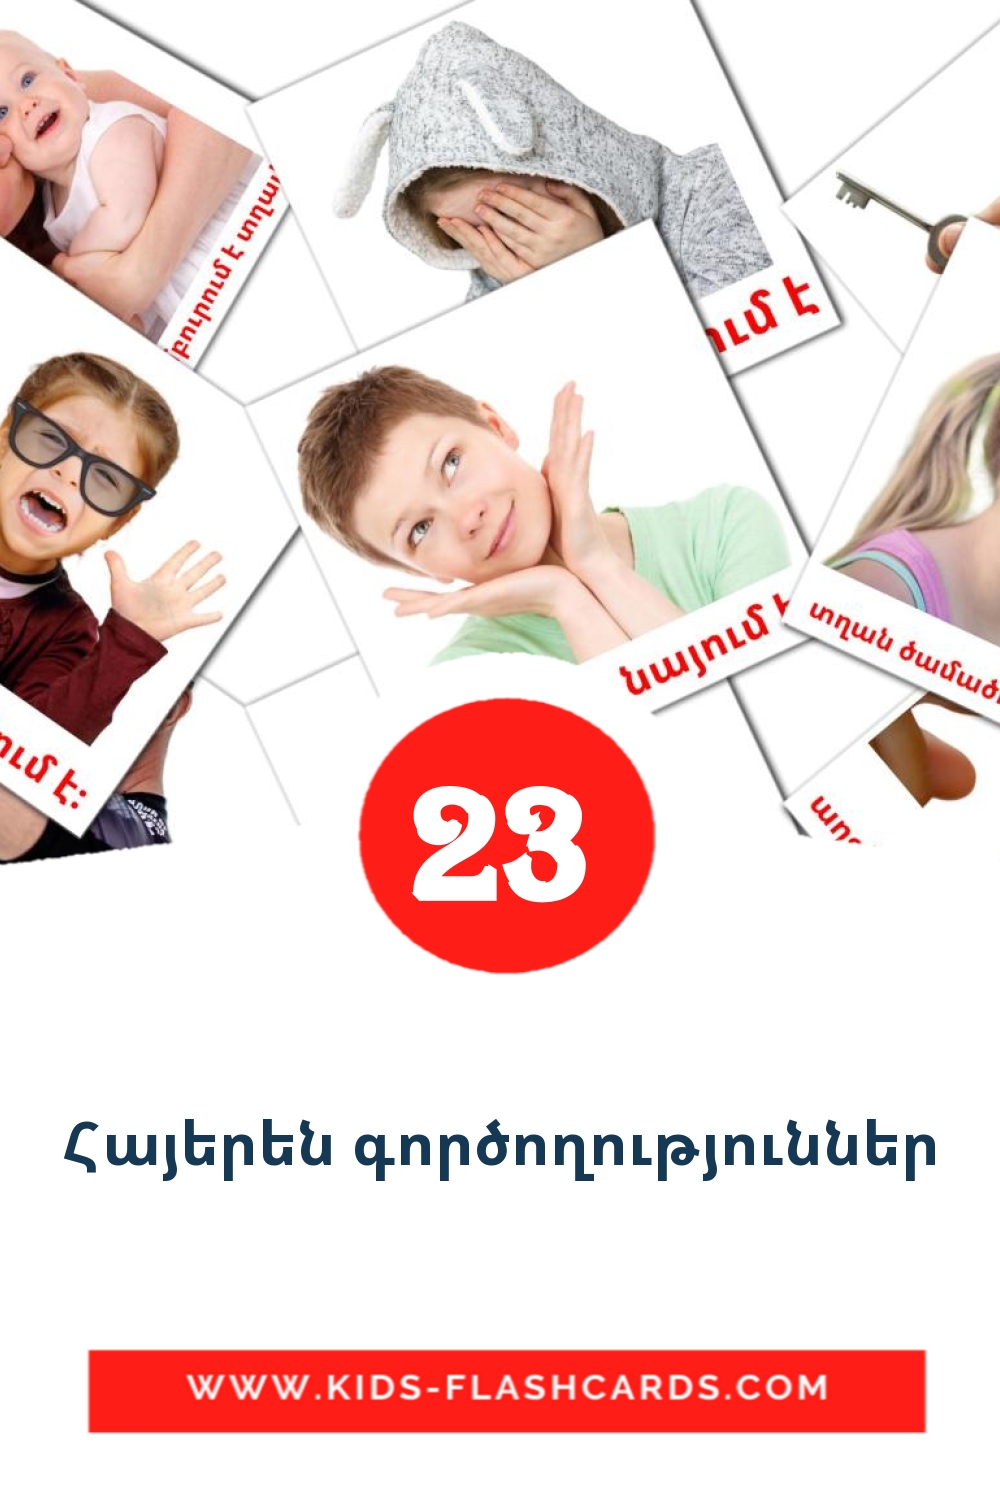 23 Cartões com Imagens de Дугуйн тээвэр para Jardim de Infância em armenian